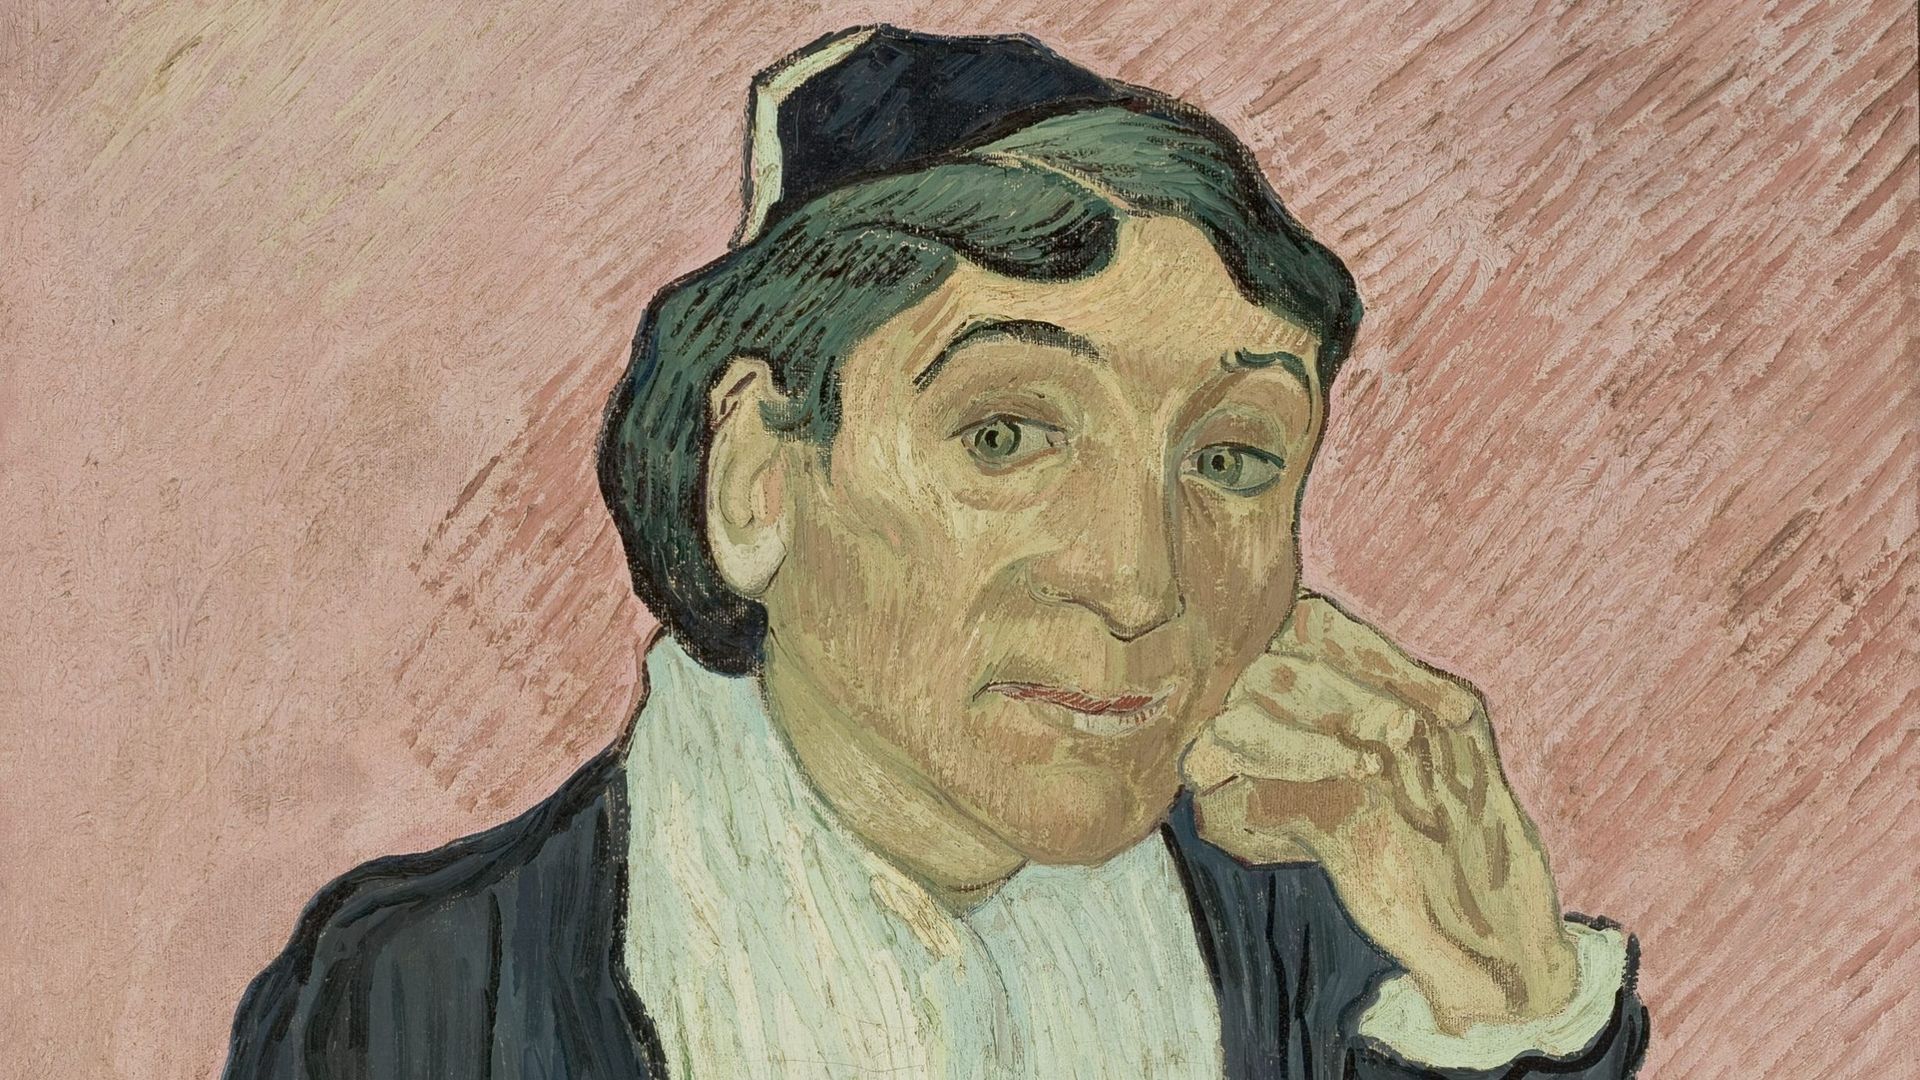 Vincent van Gogh (1853-1890), "L'Arlésienne", 1890